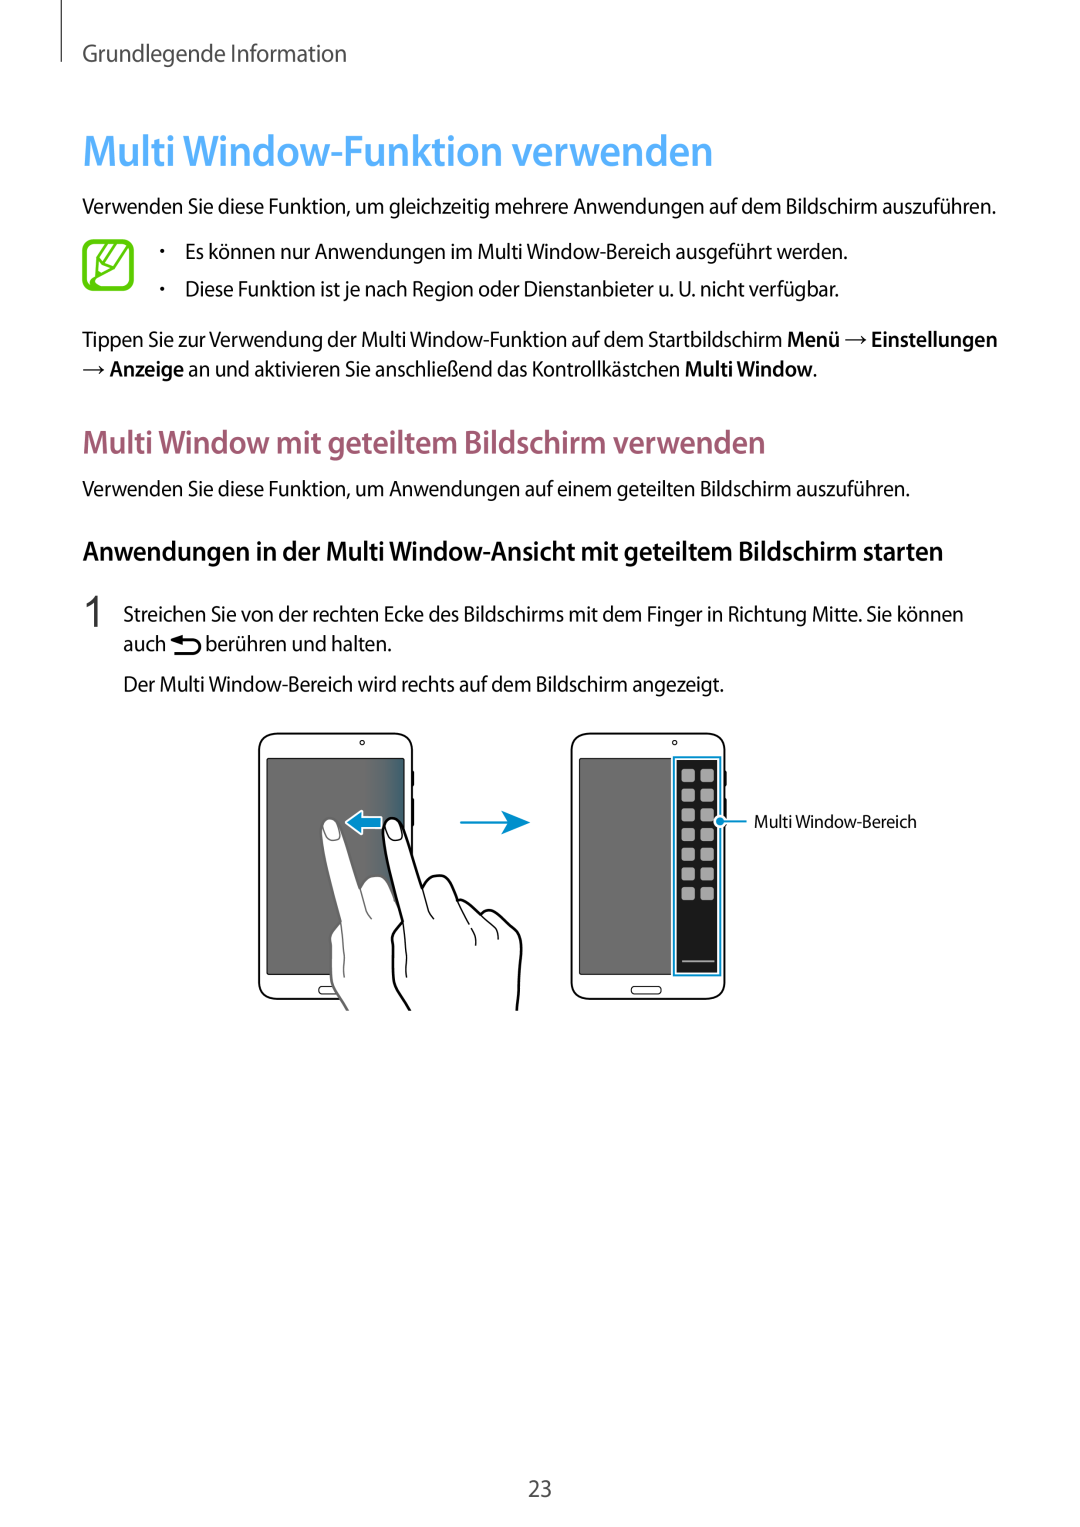 Samsung SM-T3100MKAEUR, SM-T3100ZWAXEO Multi Window-Funktion verwenden, Multi Window mit geteiltem Bildschirm verwenden 